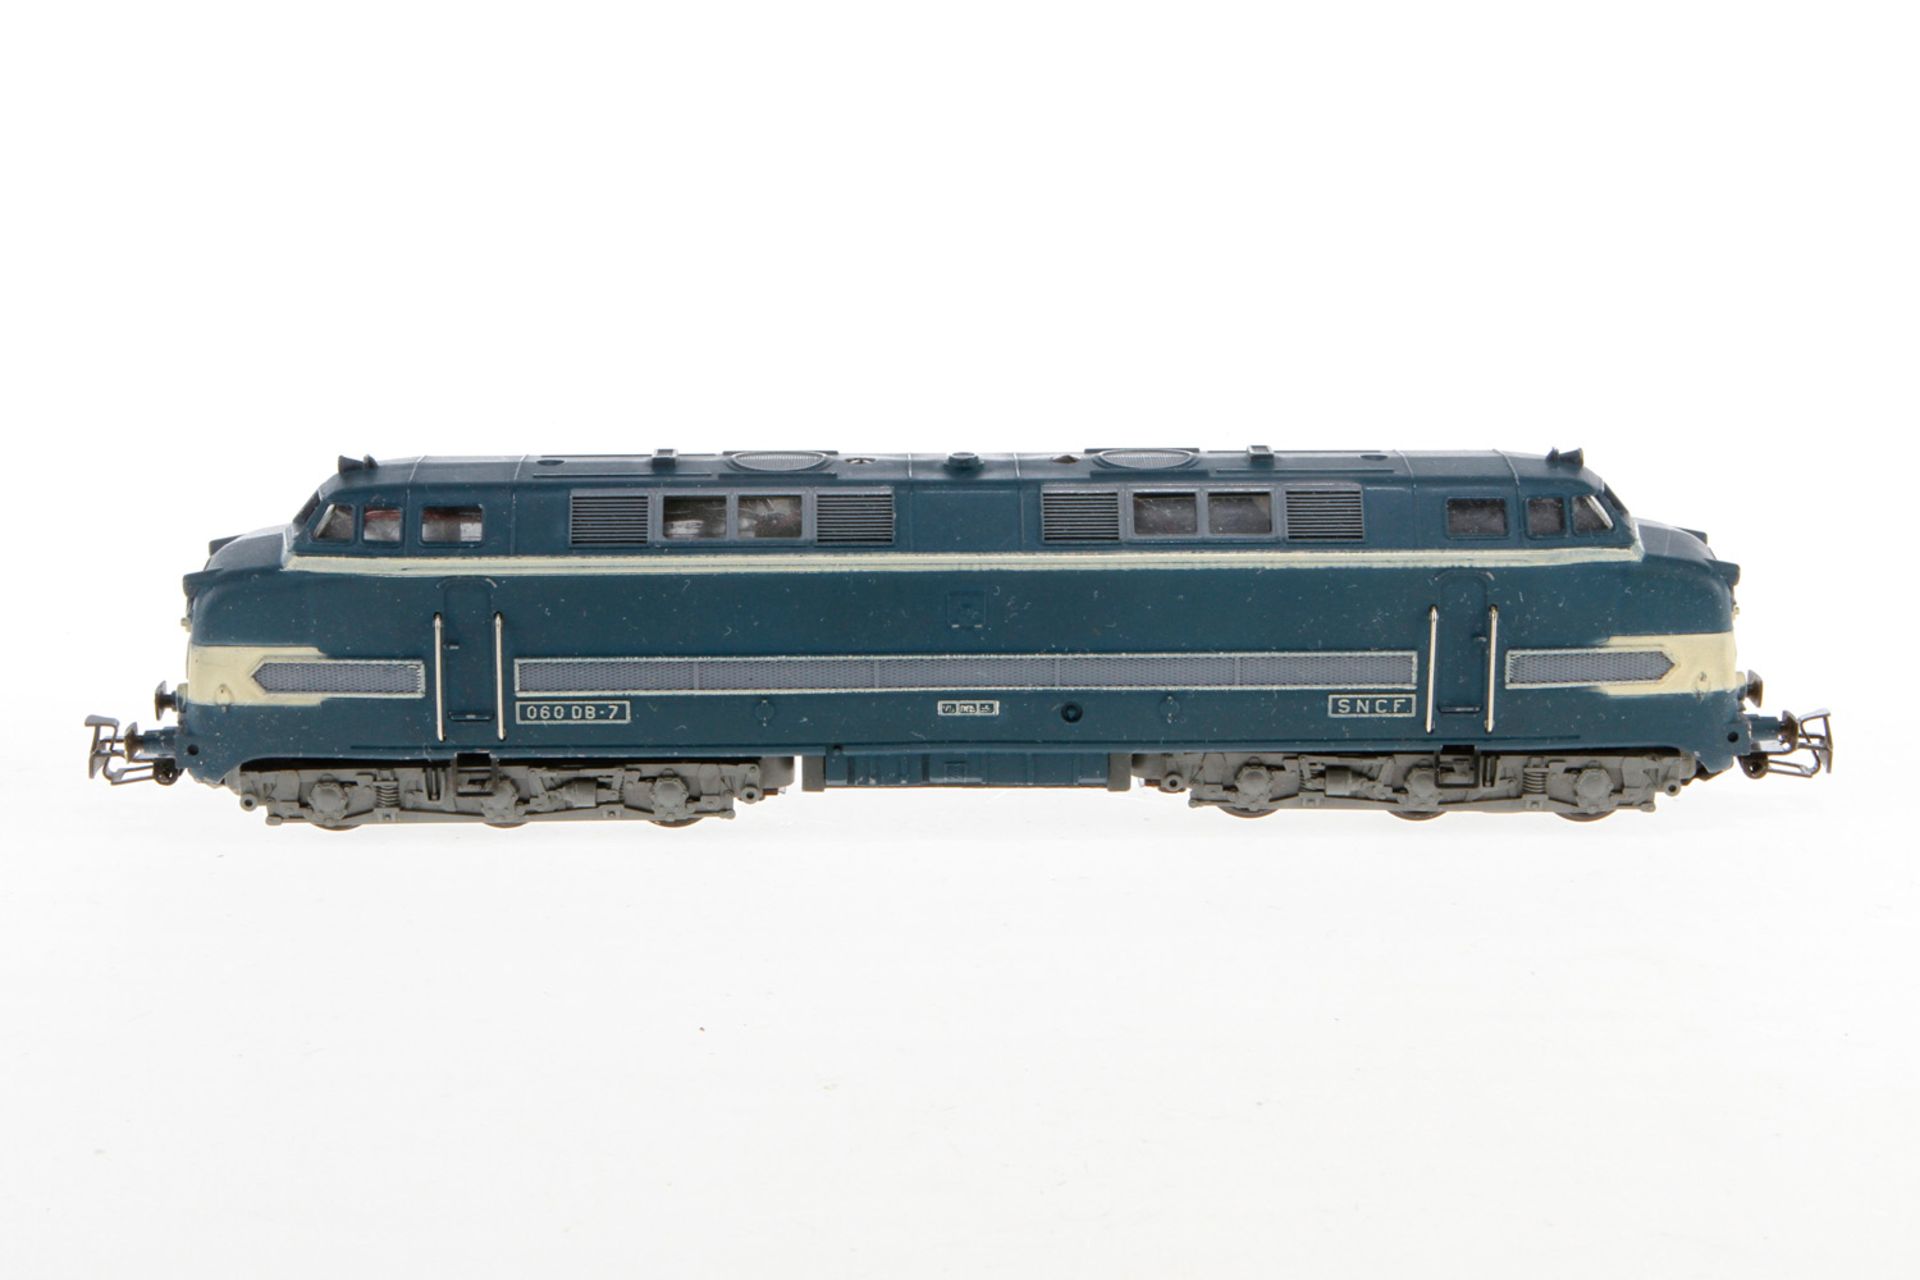 VB Diesellok "060 DB-7" 736, S H0, blau, mit Zertifikat, Alterungsspuren, OK, sonst noch Z 2